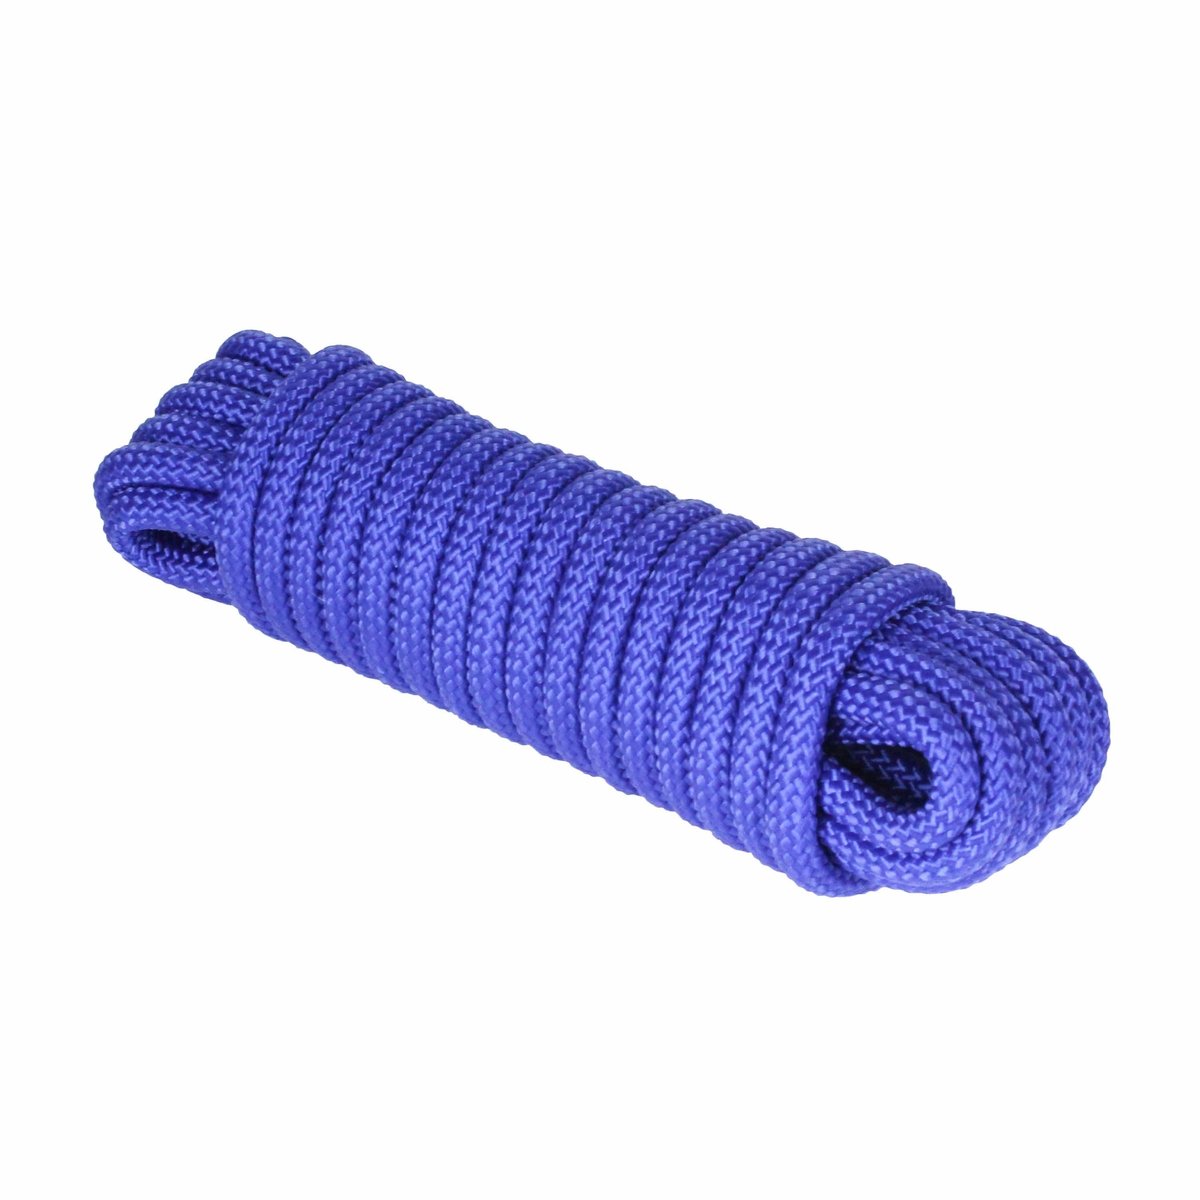 Extreme Max Diamond Braid Utility Rope 1/2" 100' Blue #3008.0289